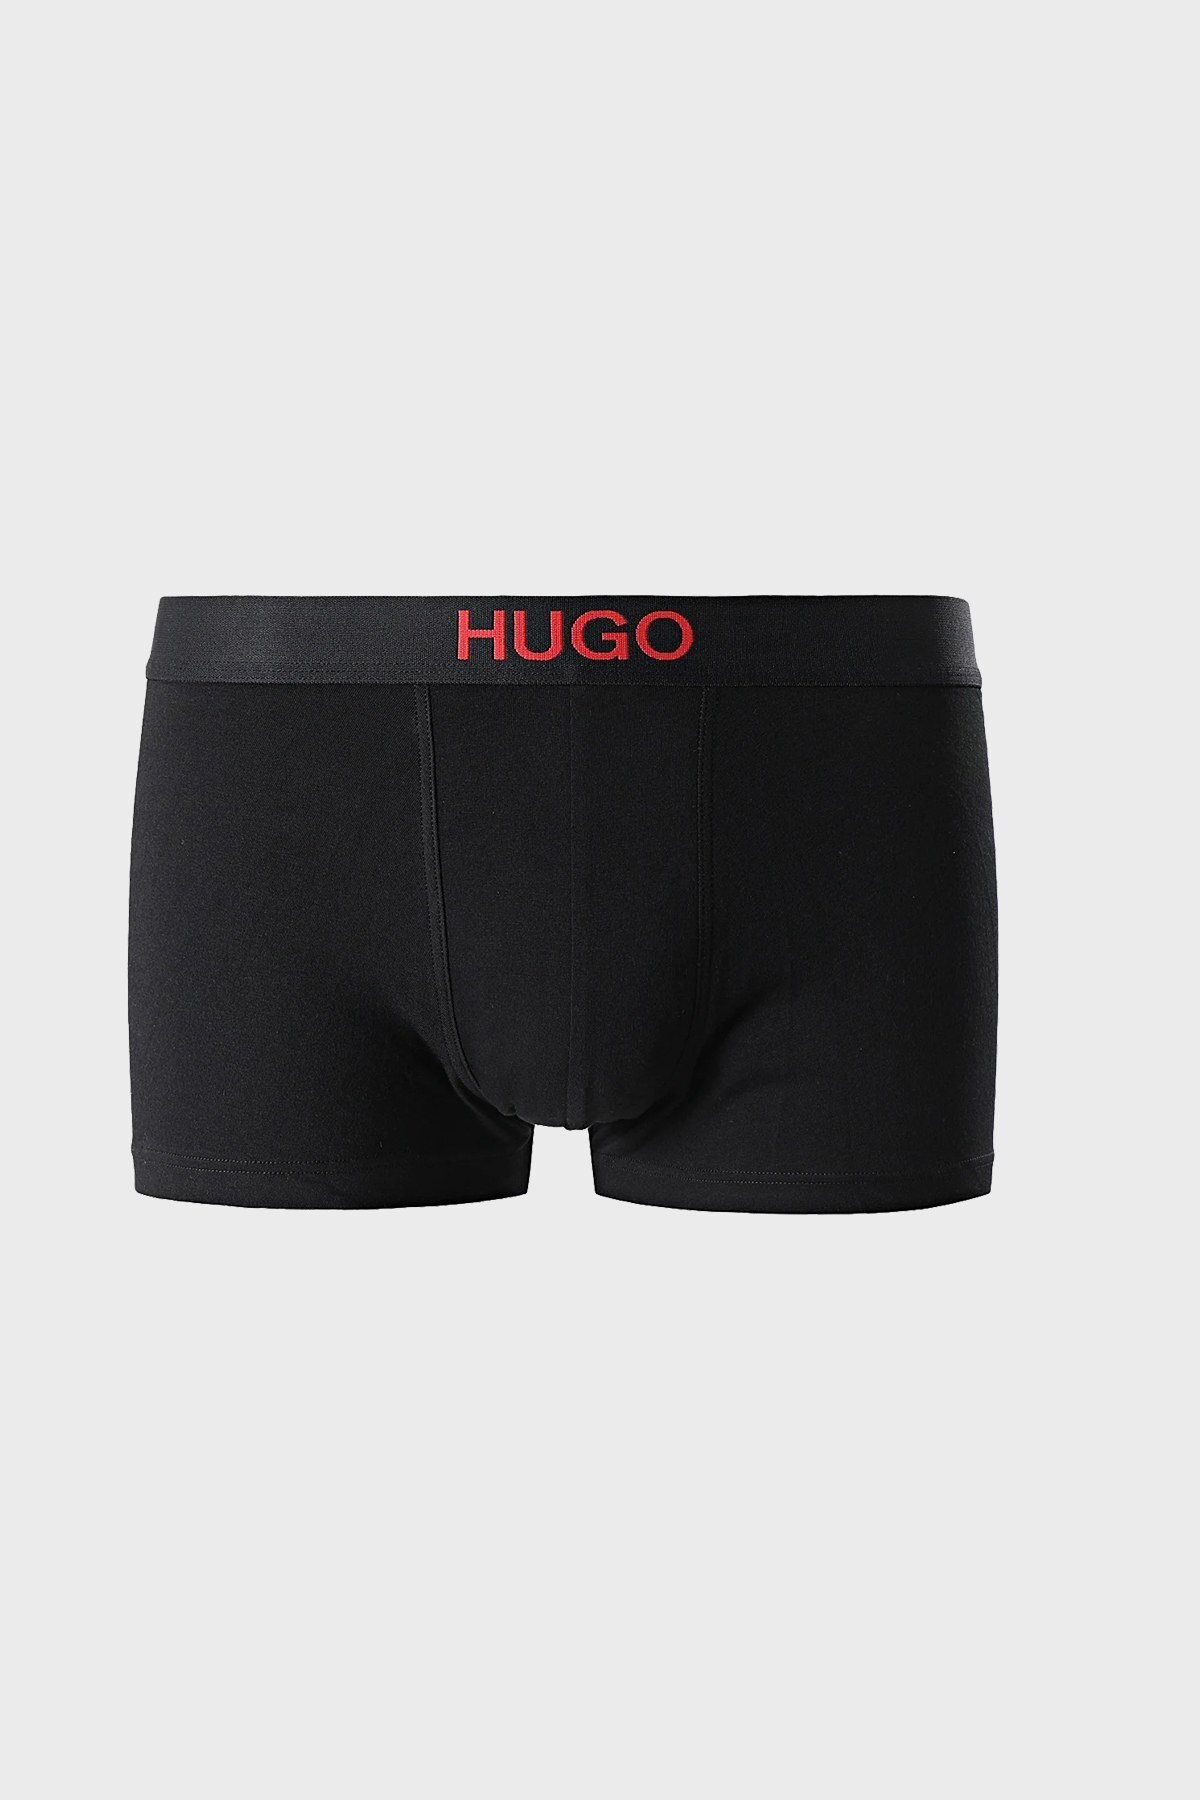 Hugo Boss Pamuklu 2 Pack Erkek Boxer 50454316 355 HAKİ-SİYAH